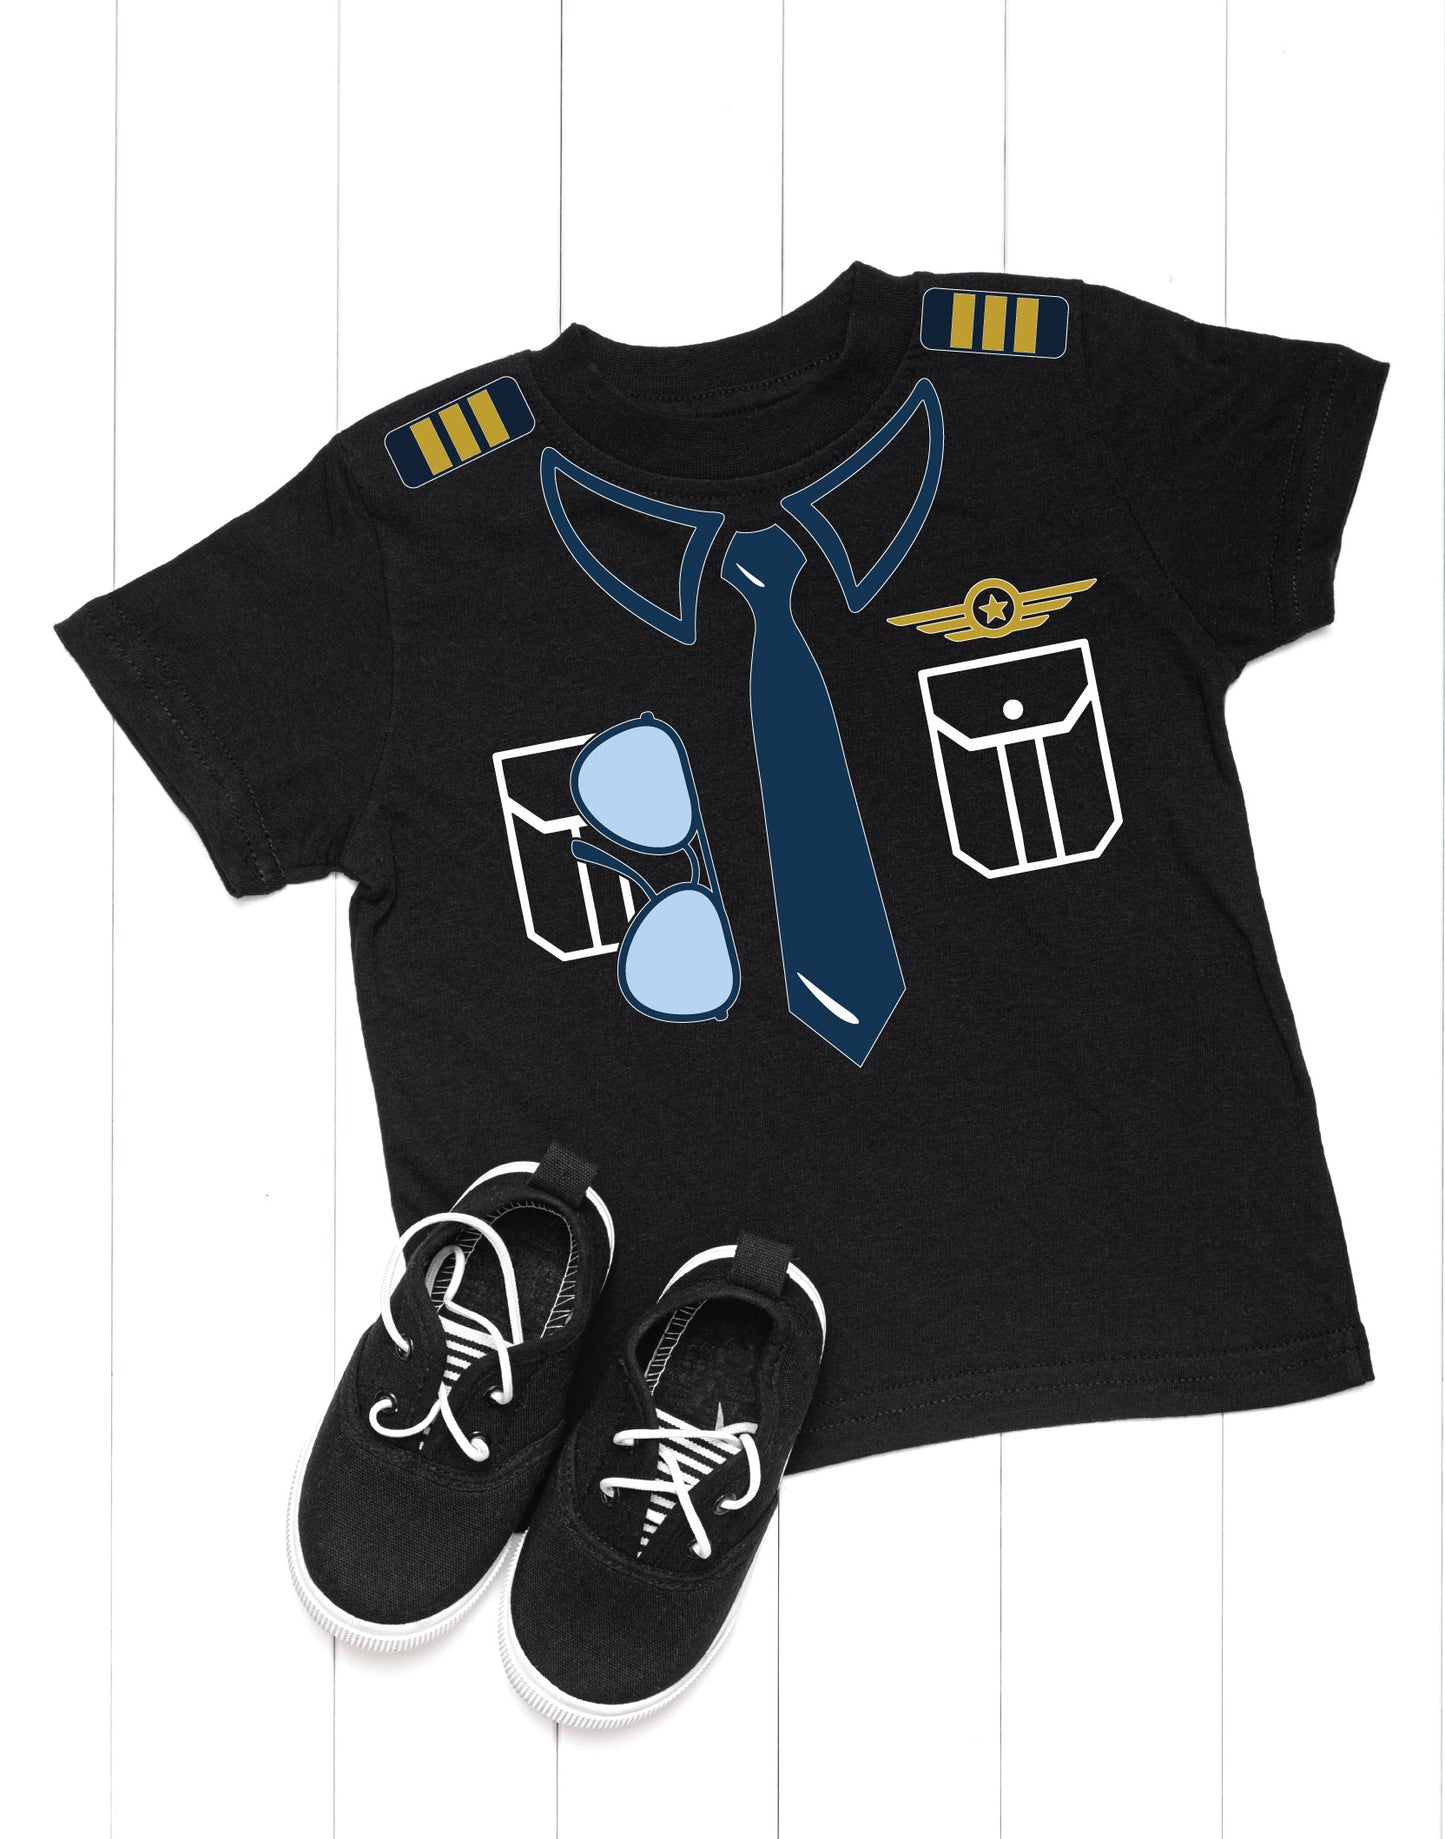 Kids Pilot Uniform